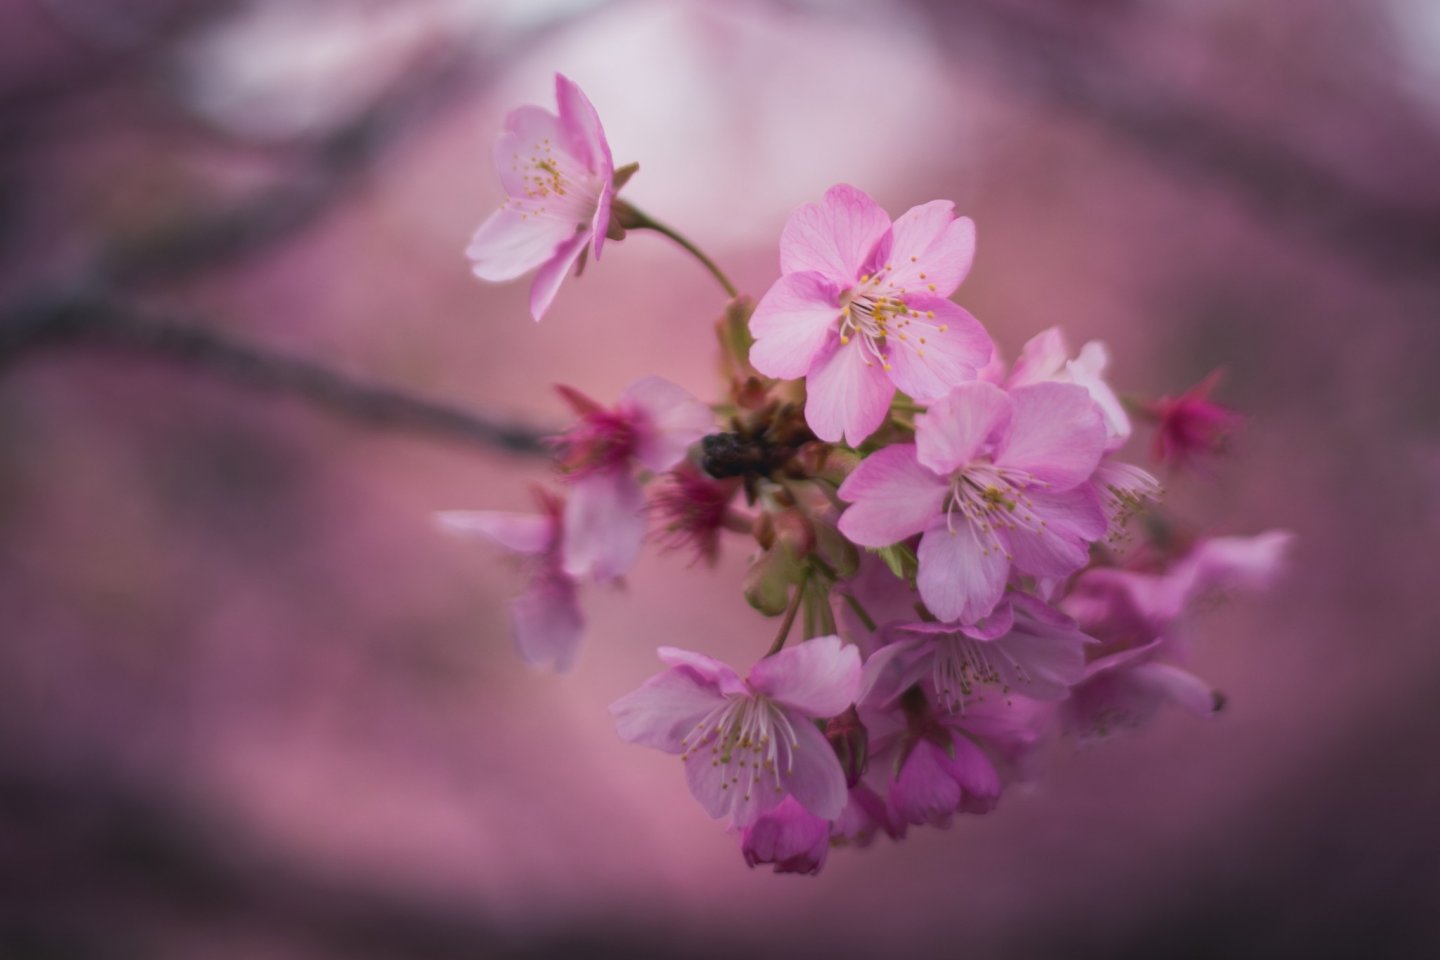 Meski dilihat dari dekat, bunga-bunga sakura akan tetap memukai dengan kecantikannya yang halus